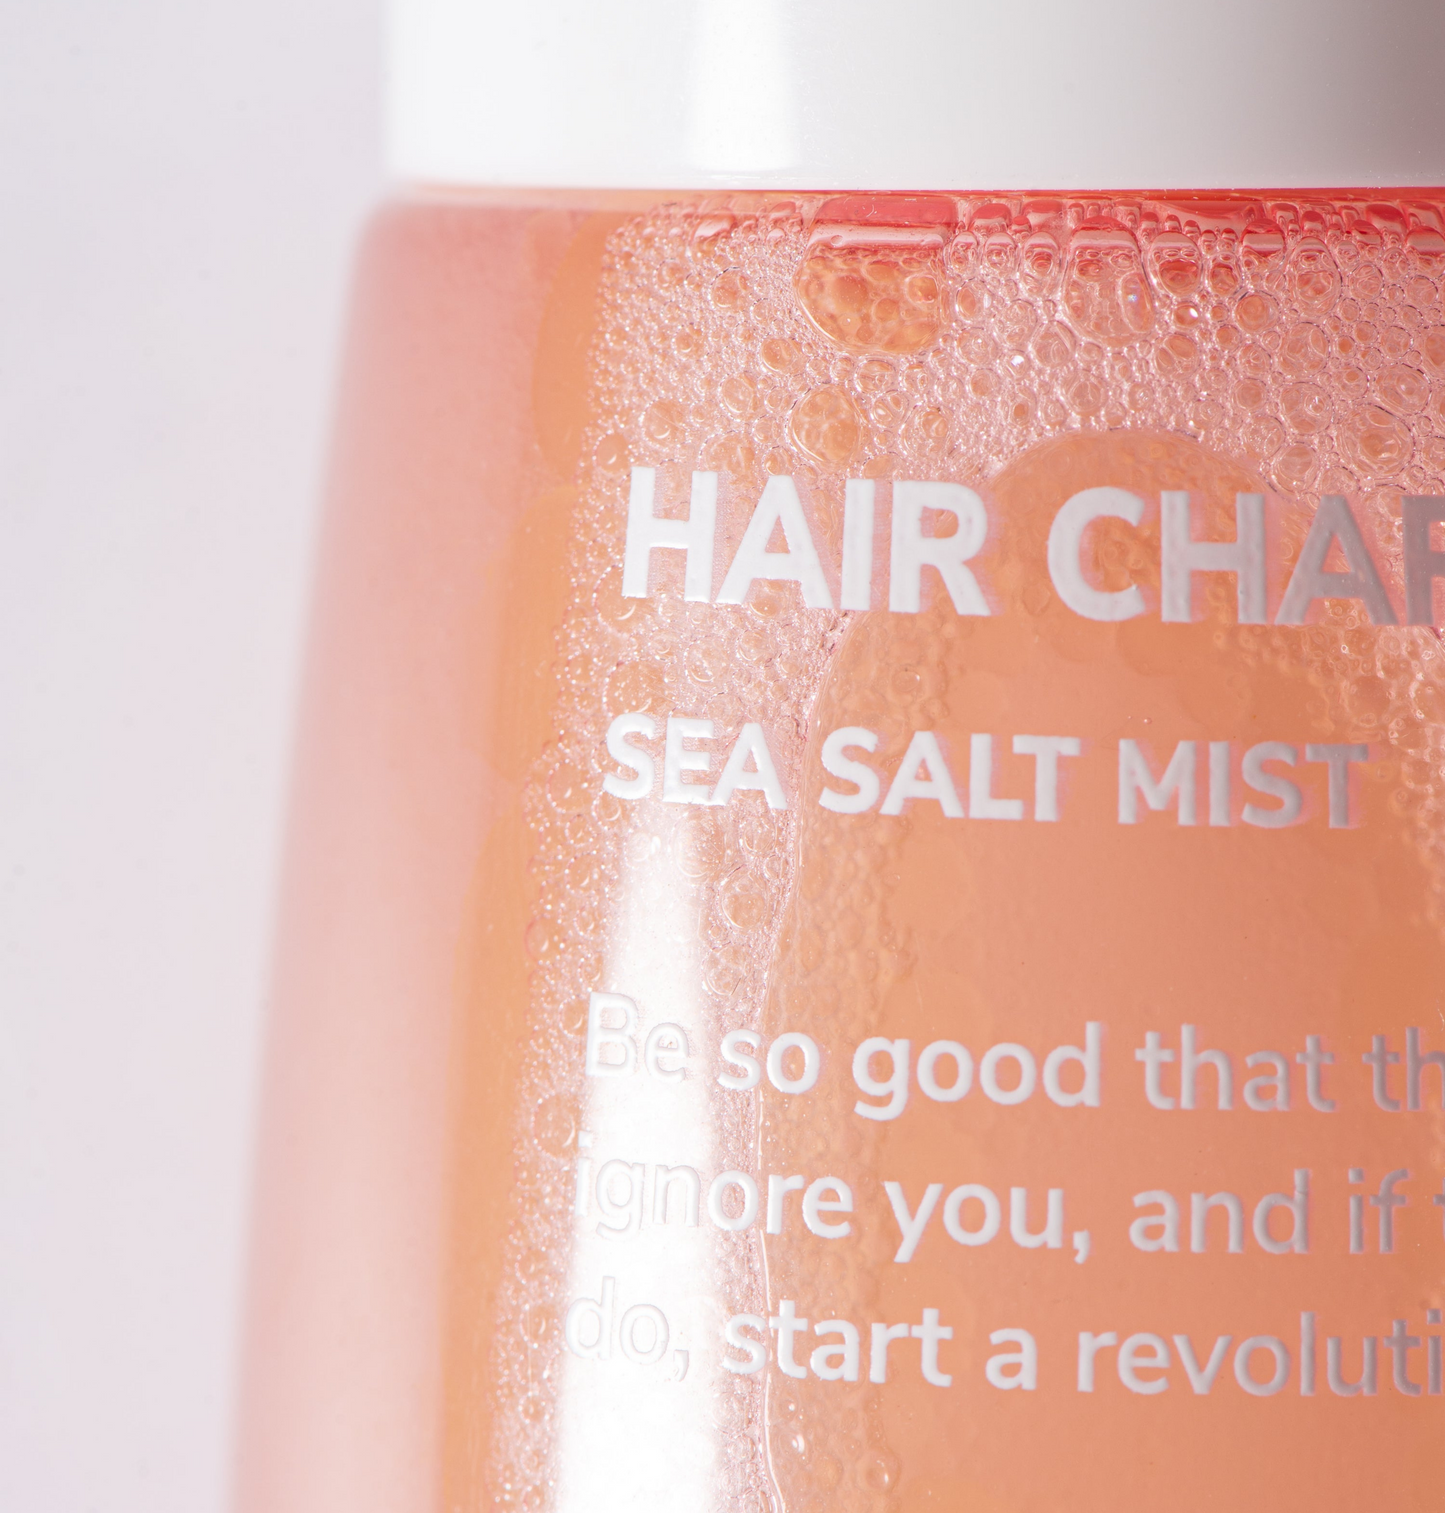 Hair Charger Sea Salt Mist